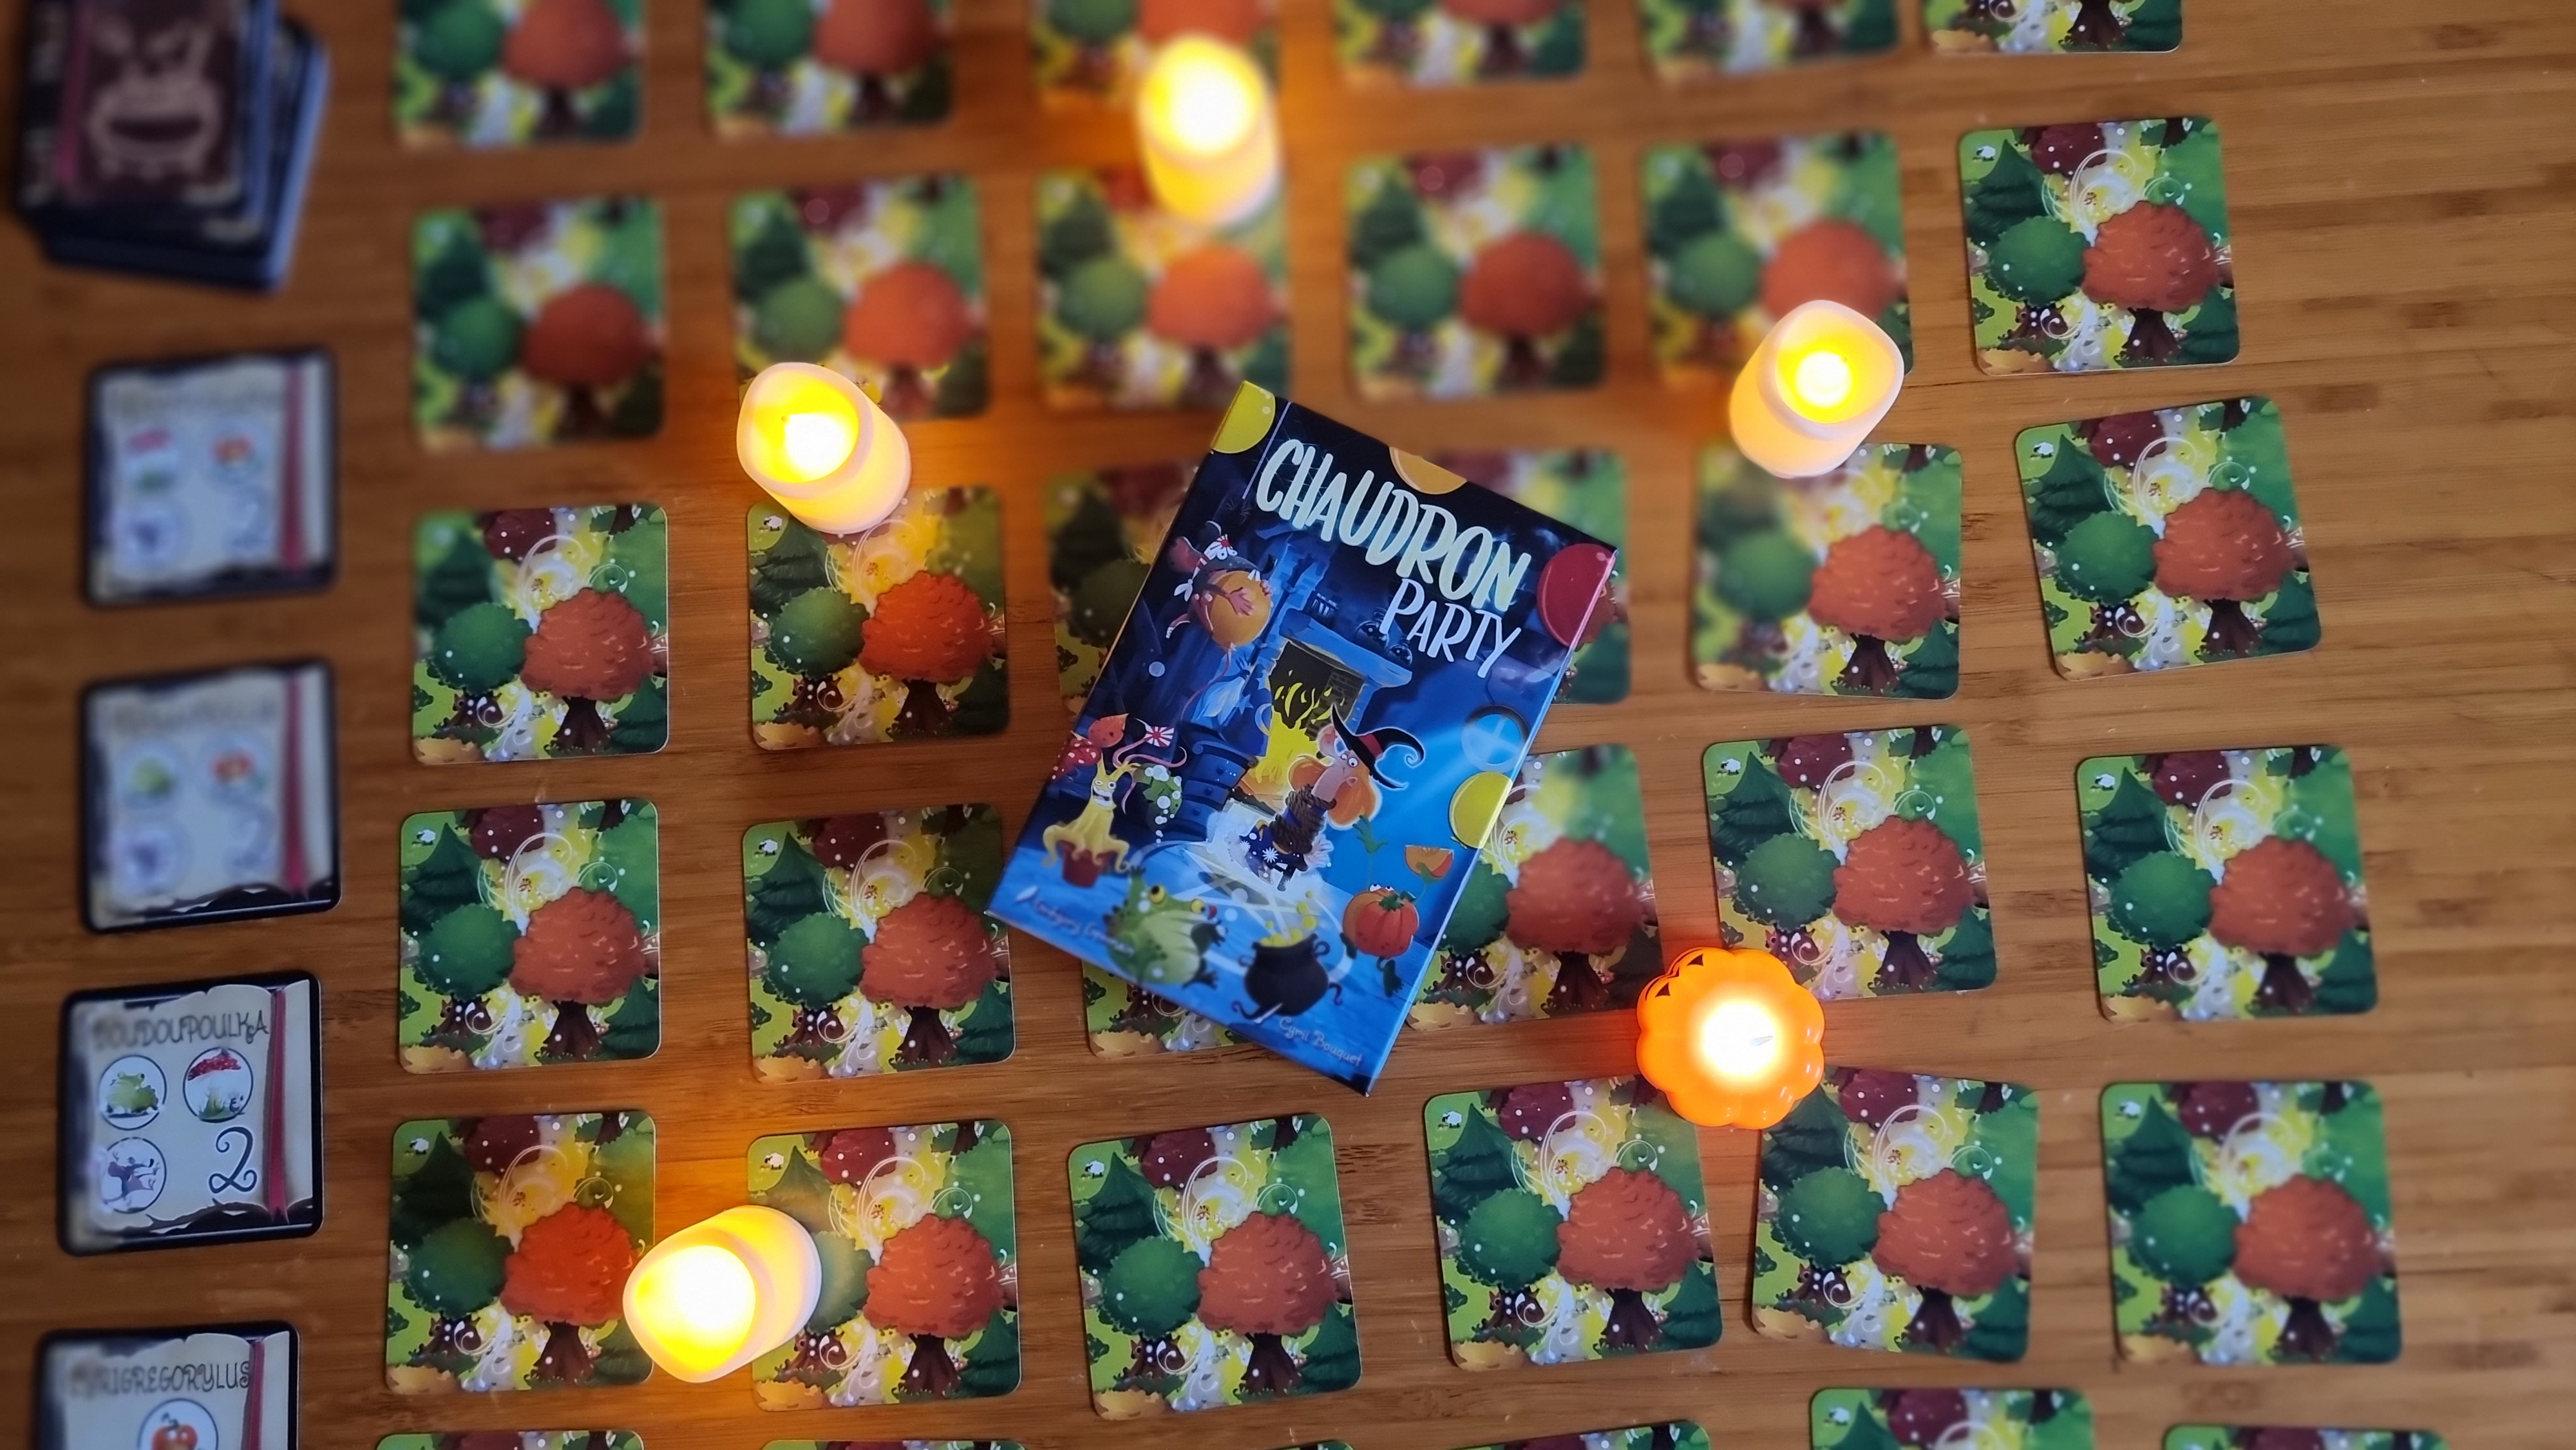 Un jeu pour petites sorcières : Chaudron magique - Les idées du samedi